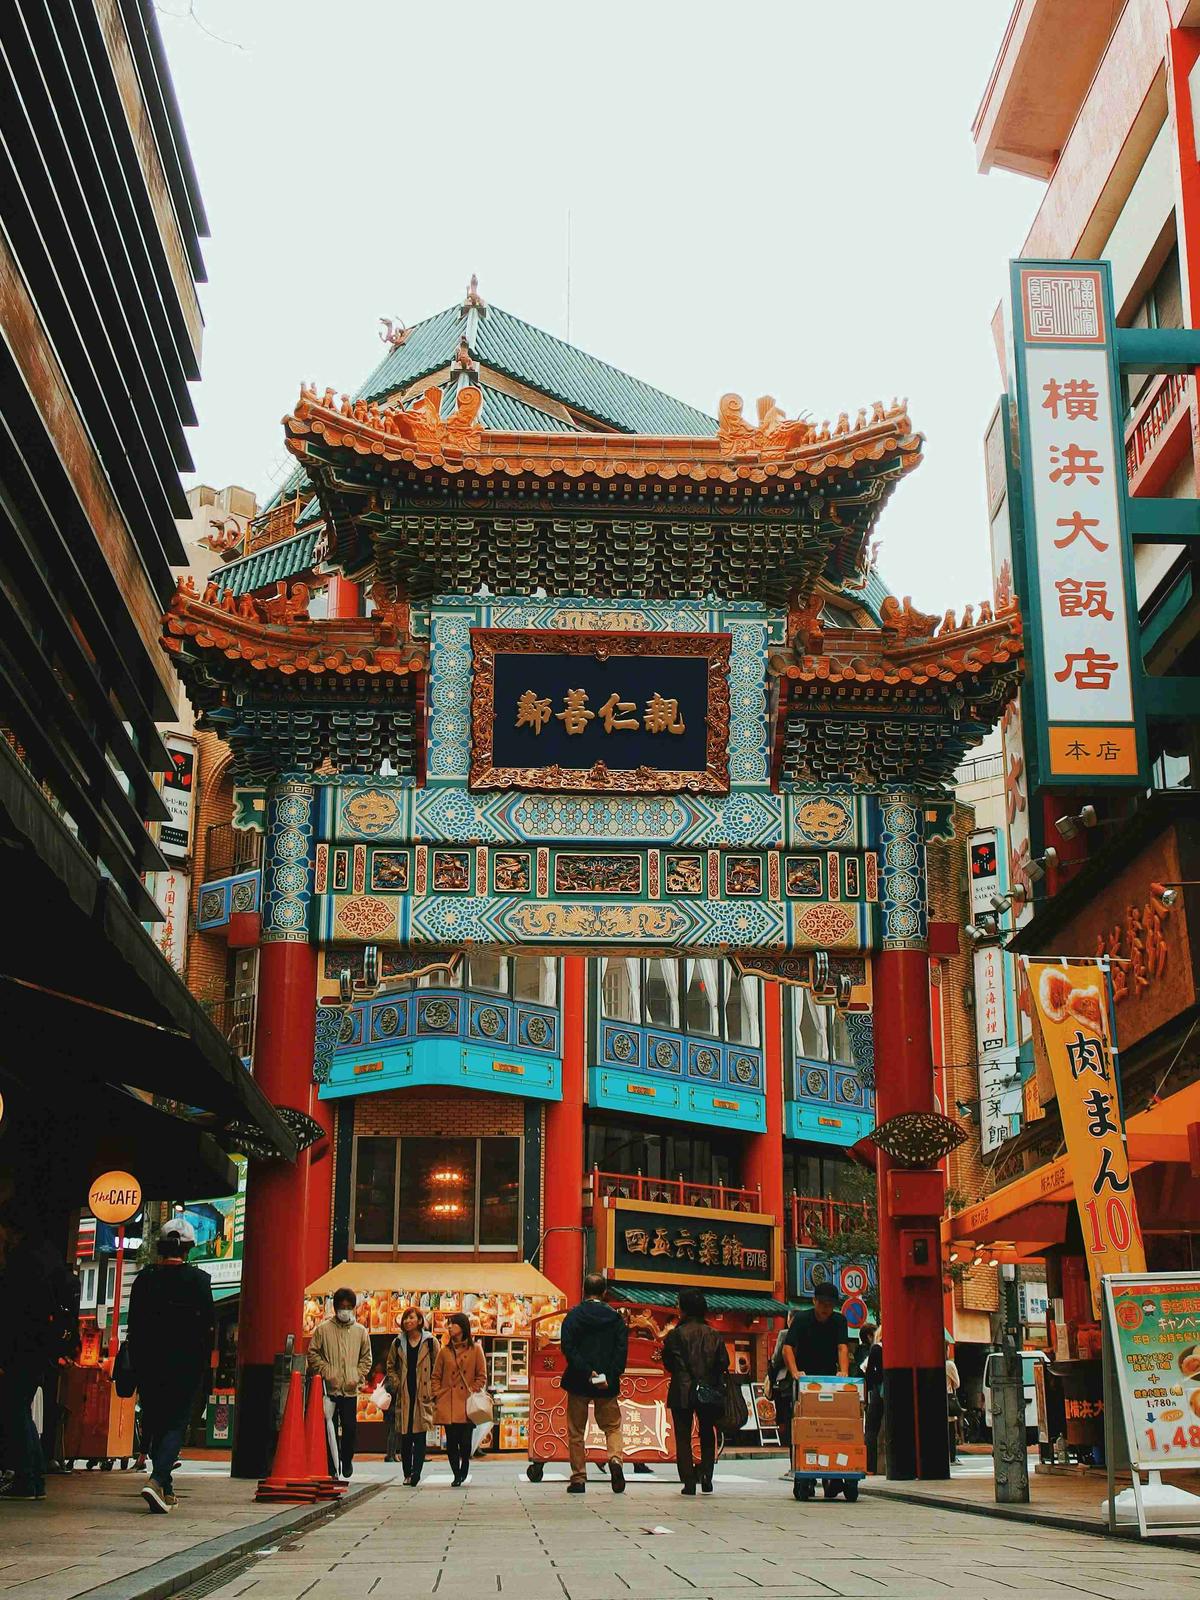 Yayalarla Çin Mahallesi'ne Canlı Giriş